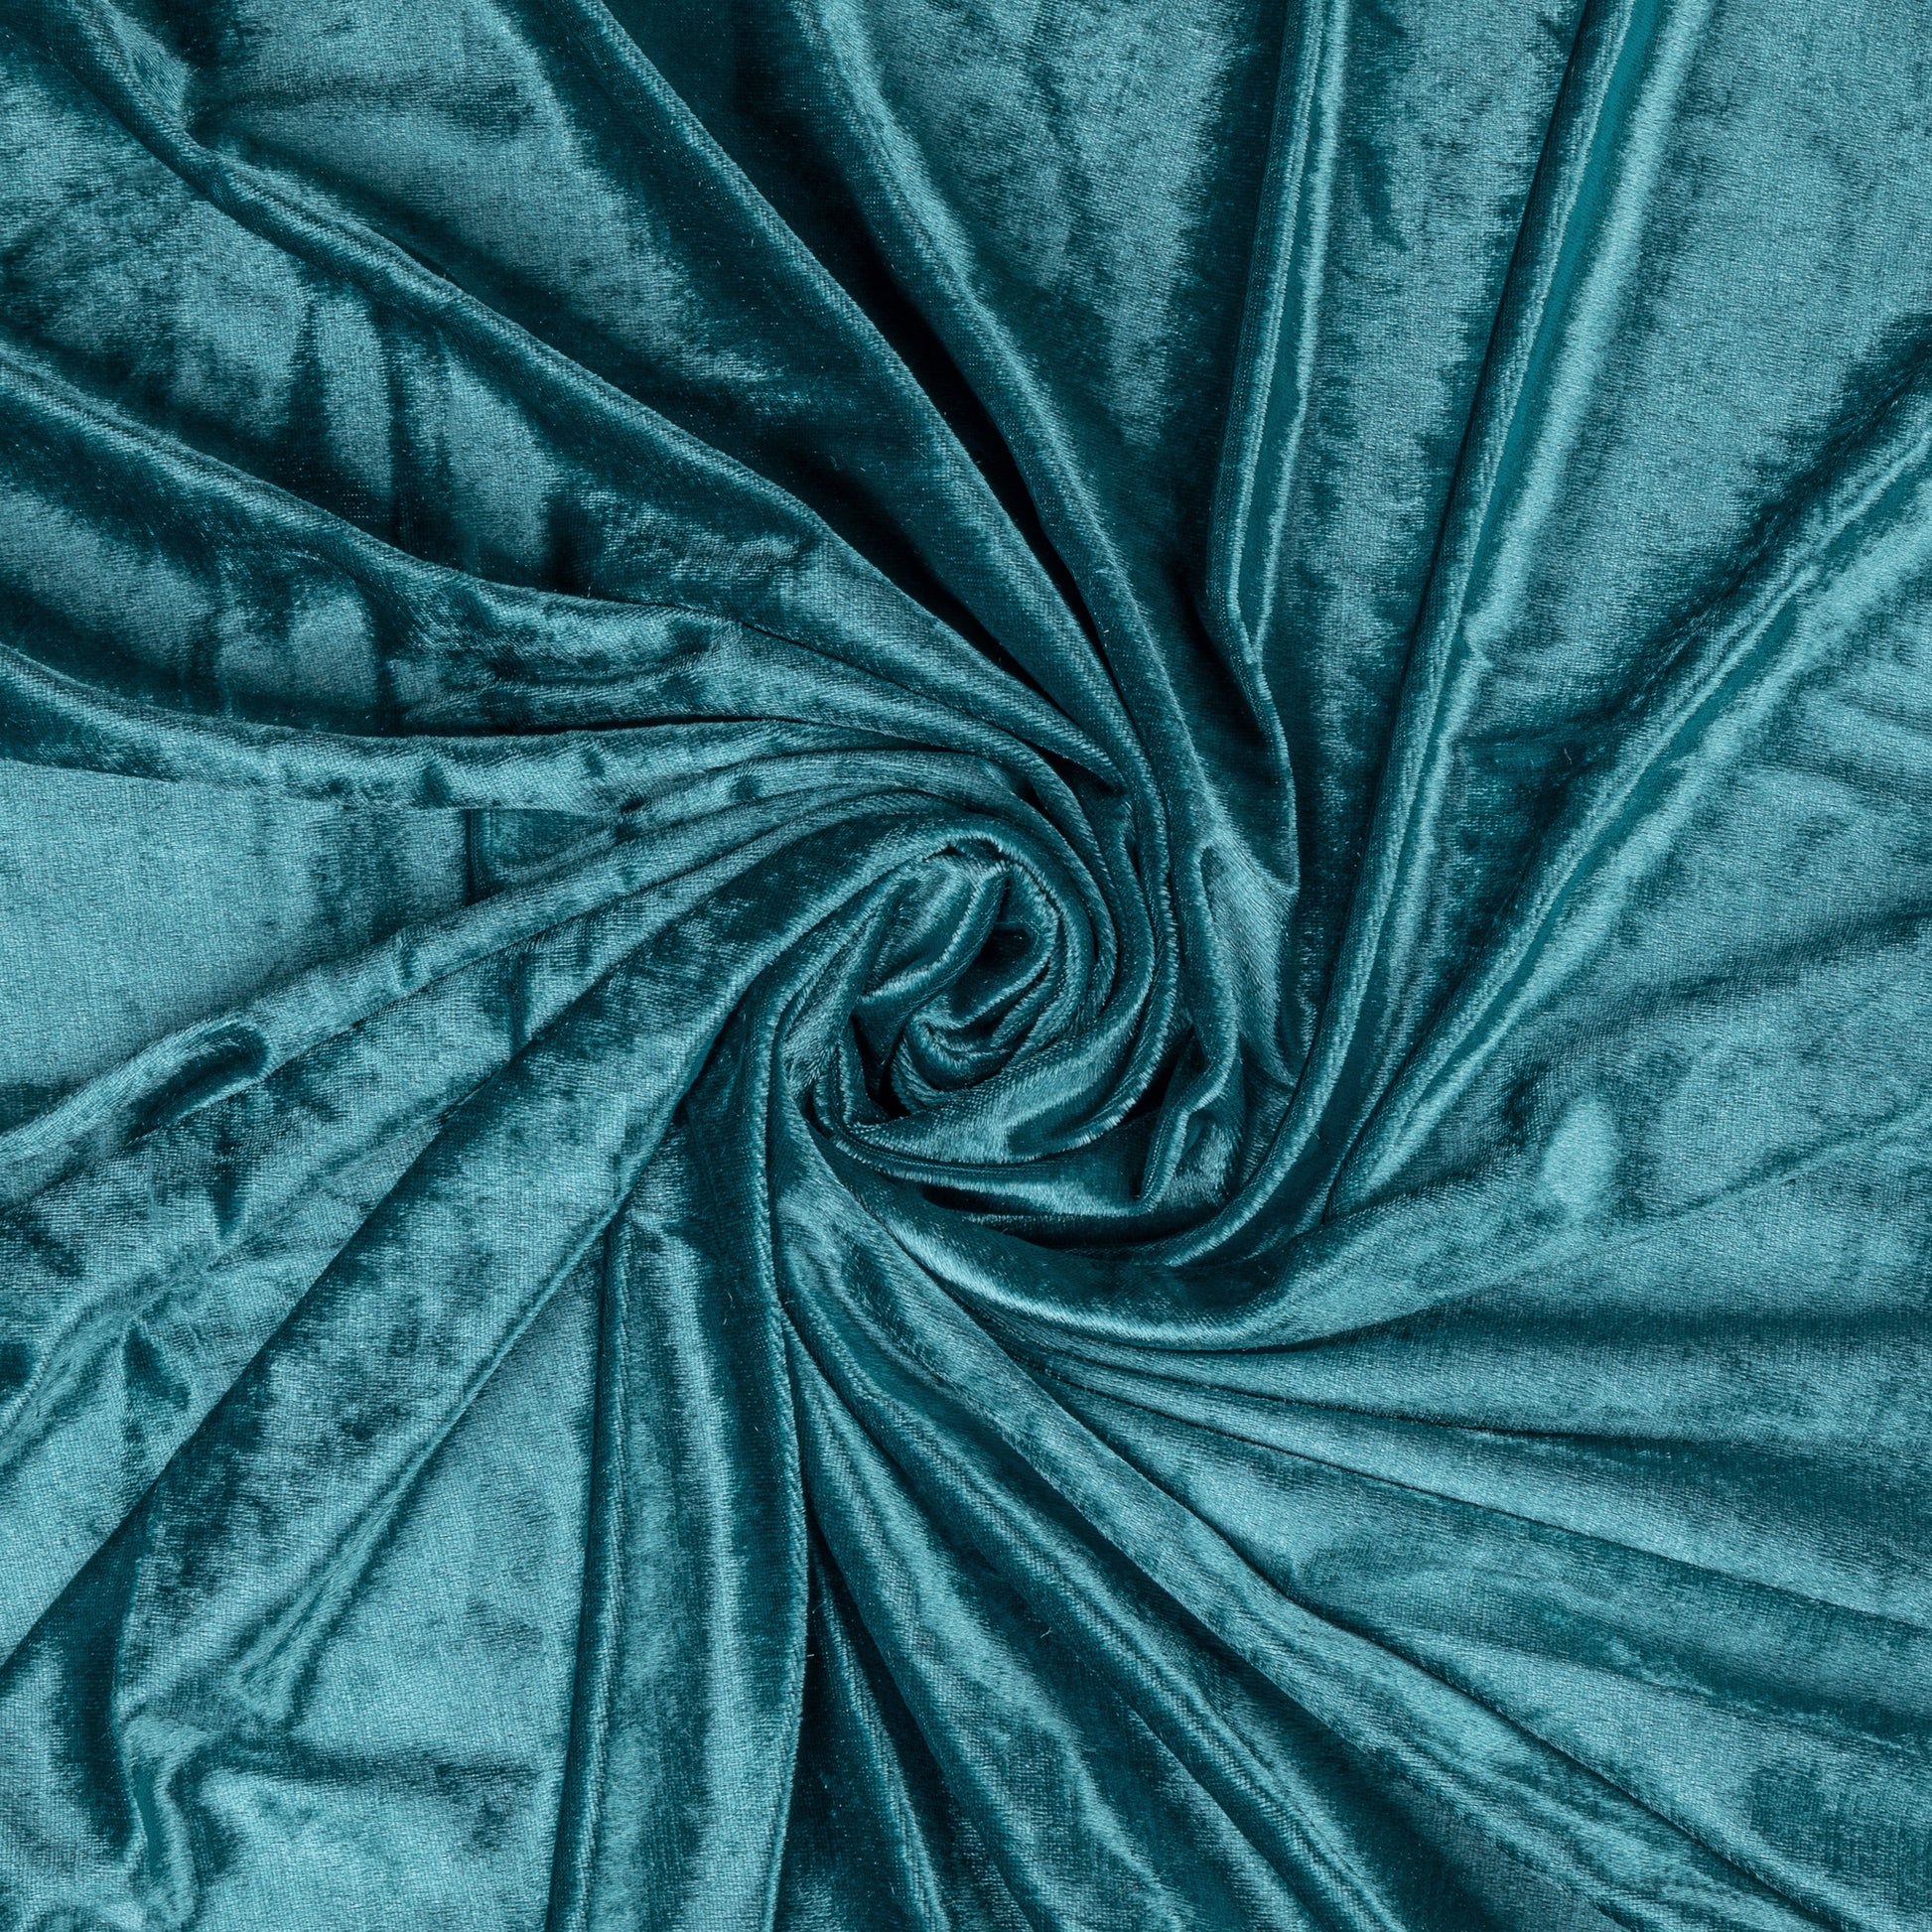 Blue Velvet Fabric Upholstery  Green Velvet Fabric Upholstery